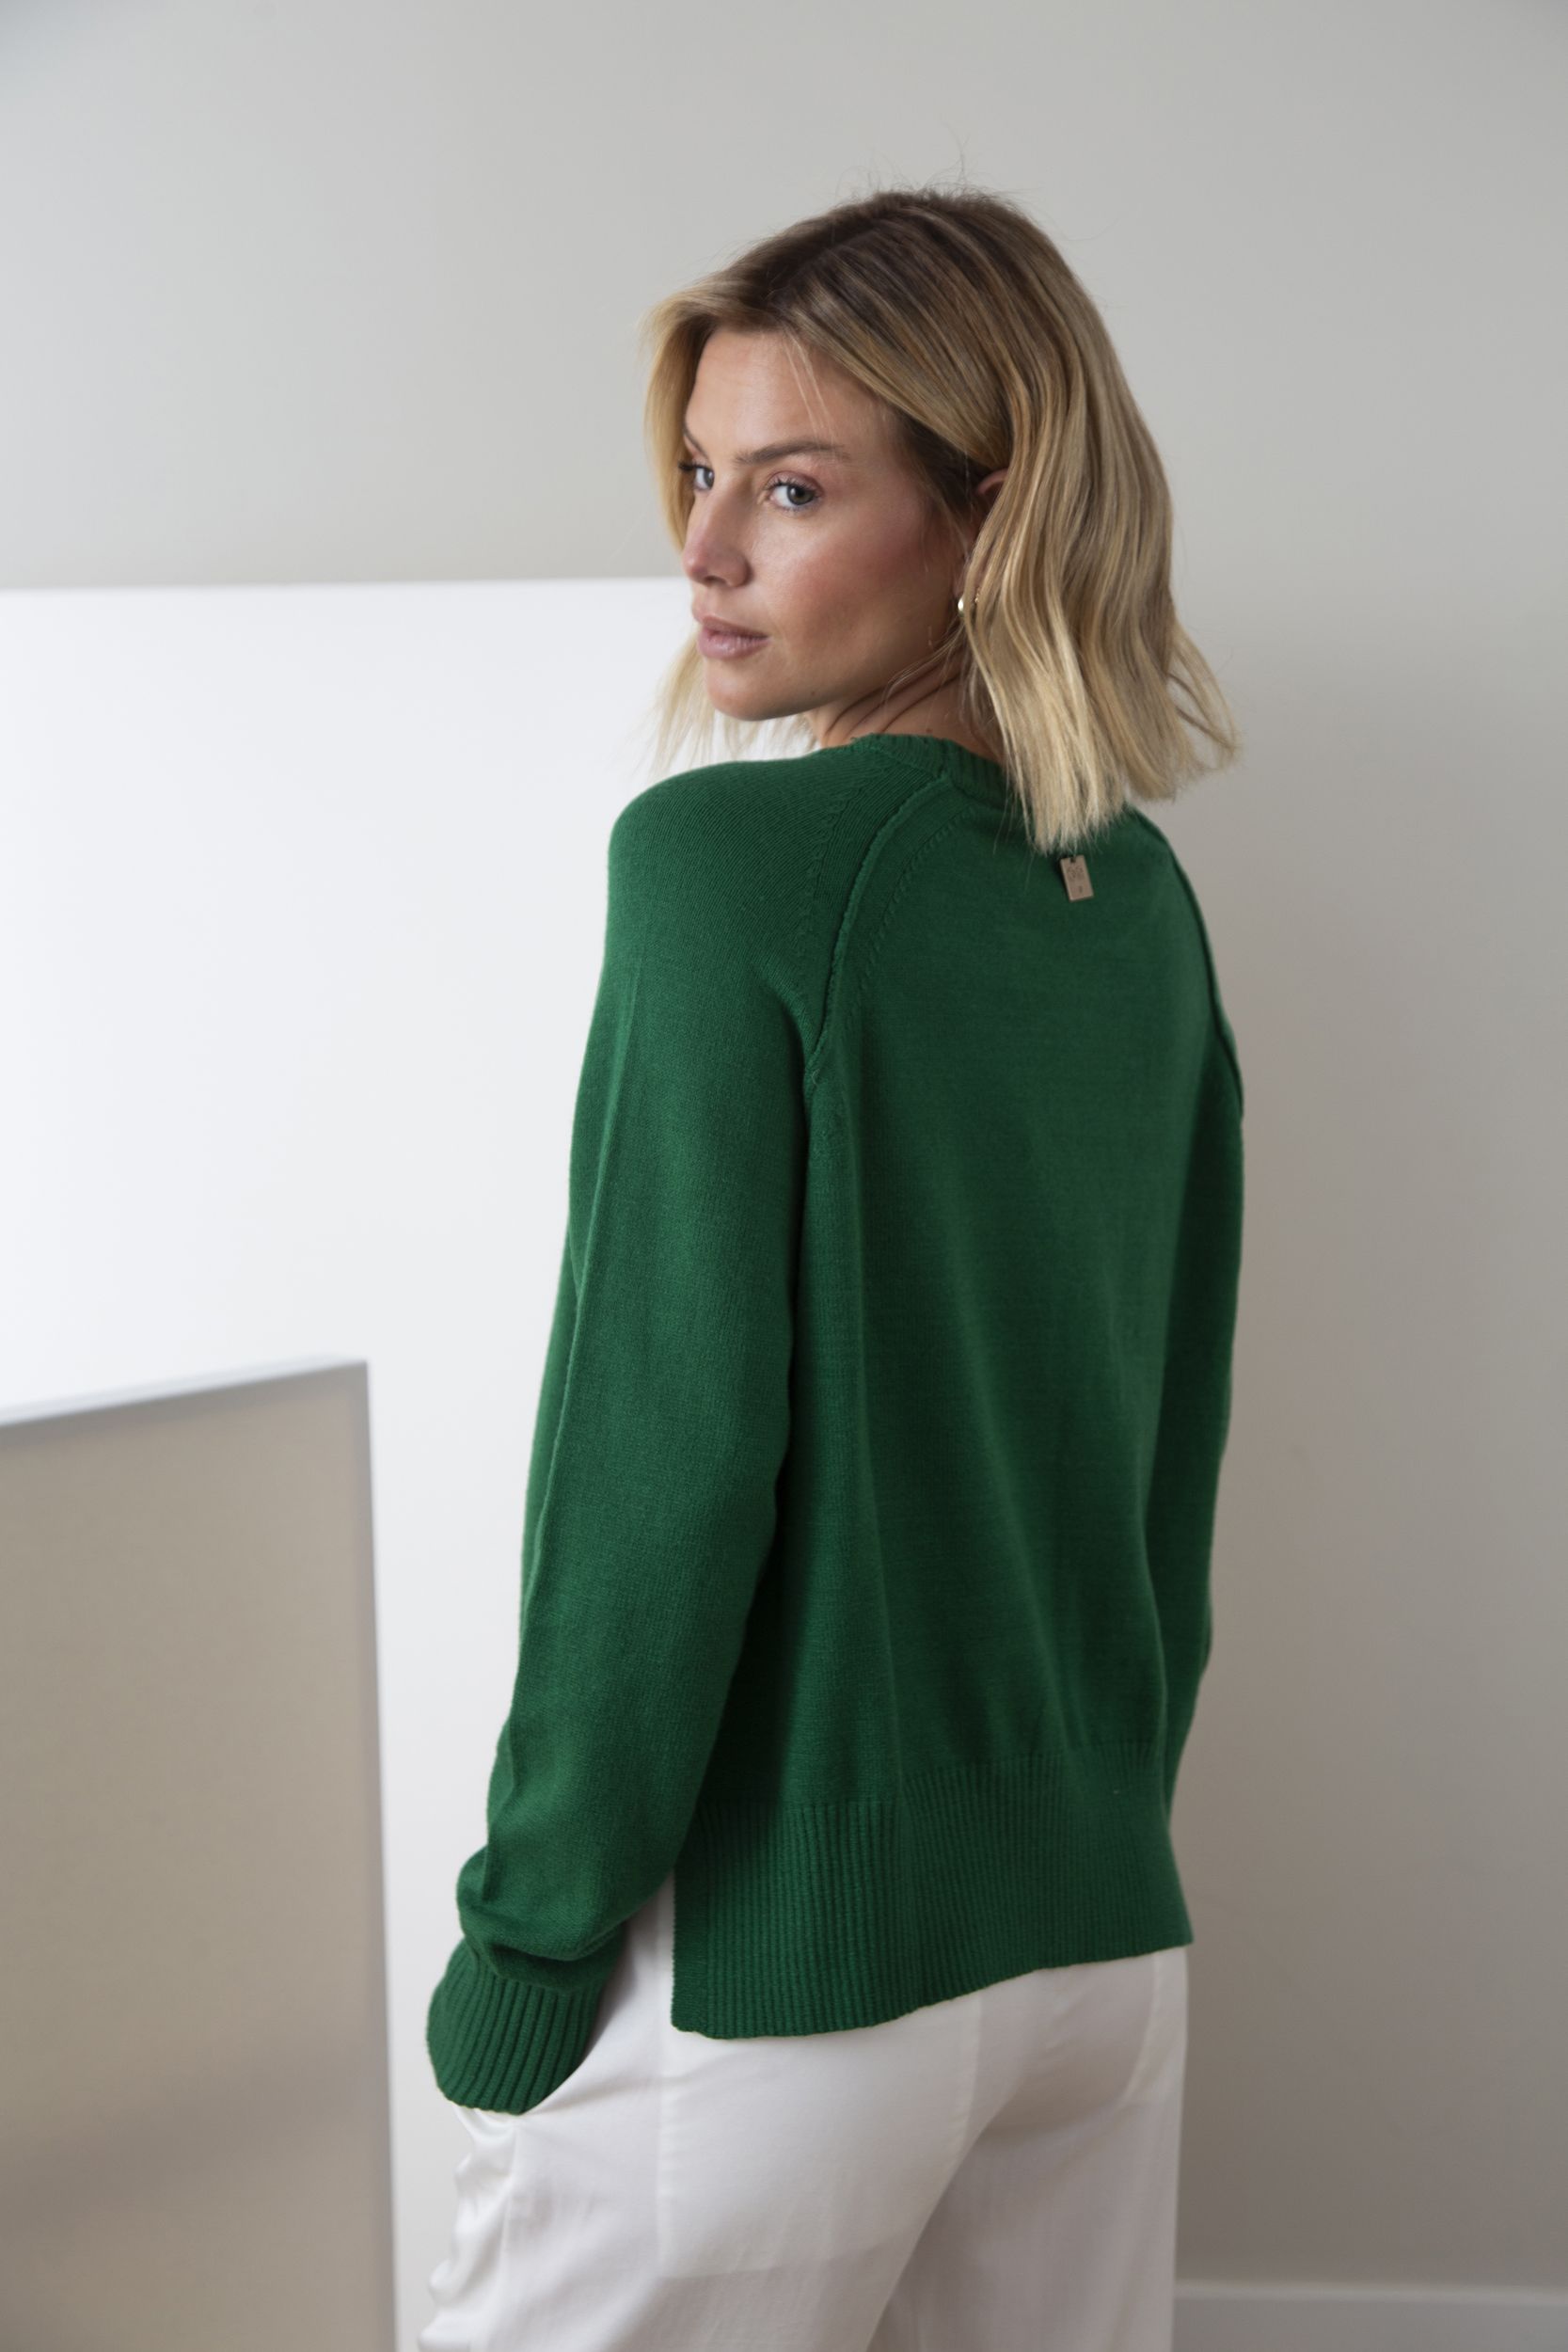 752-sweater-tatiana-green-2.jpg